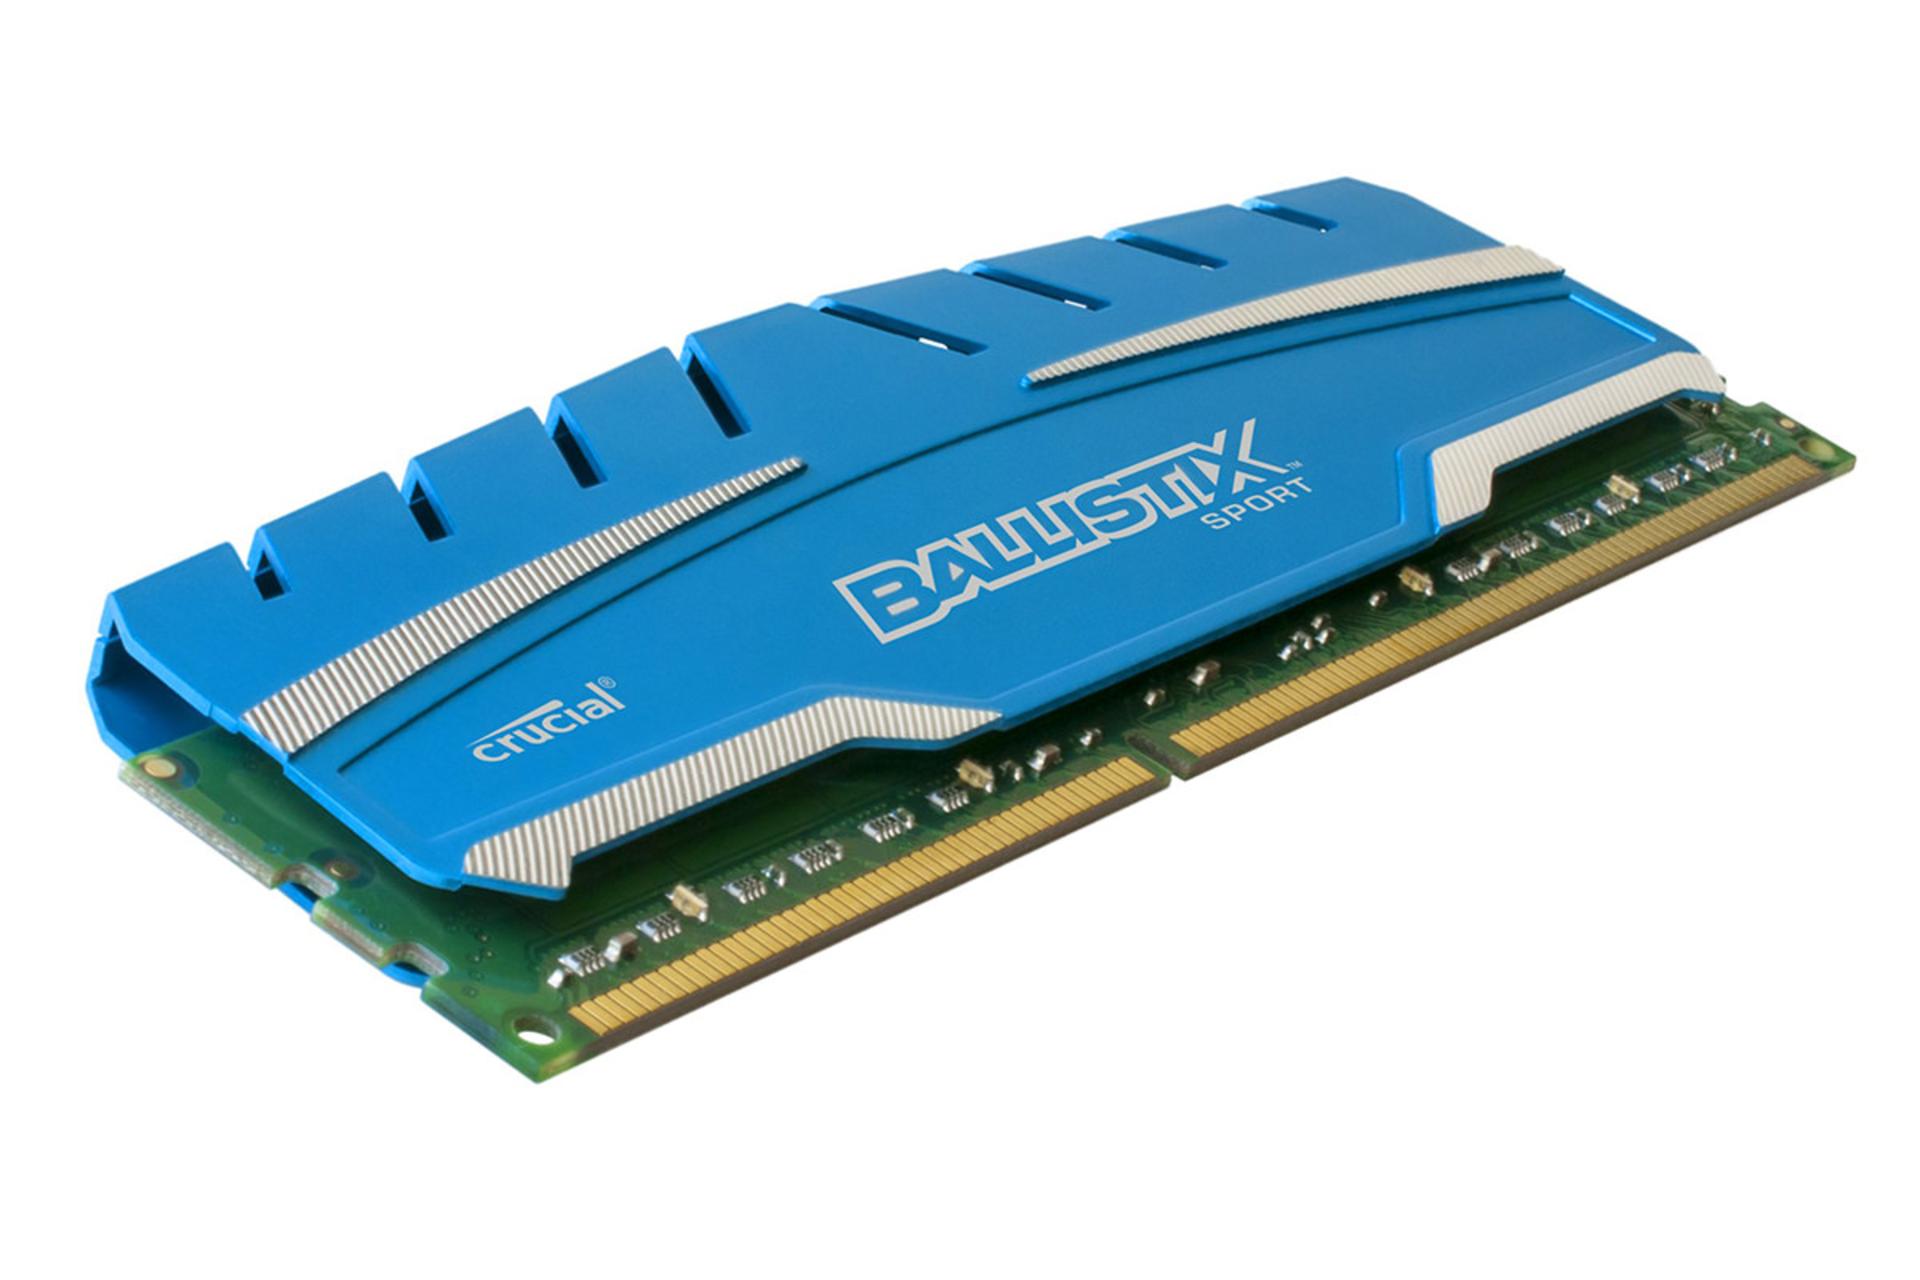 رم کروشیال Ballistix Sport XT ظرفیت 4 گیگابایت از نوع DDR3-1866 نمای جانبی